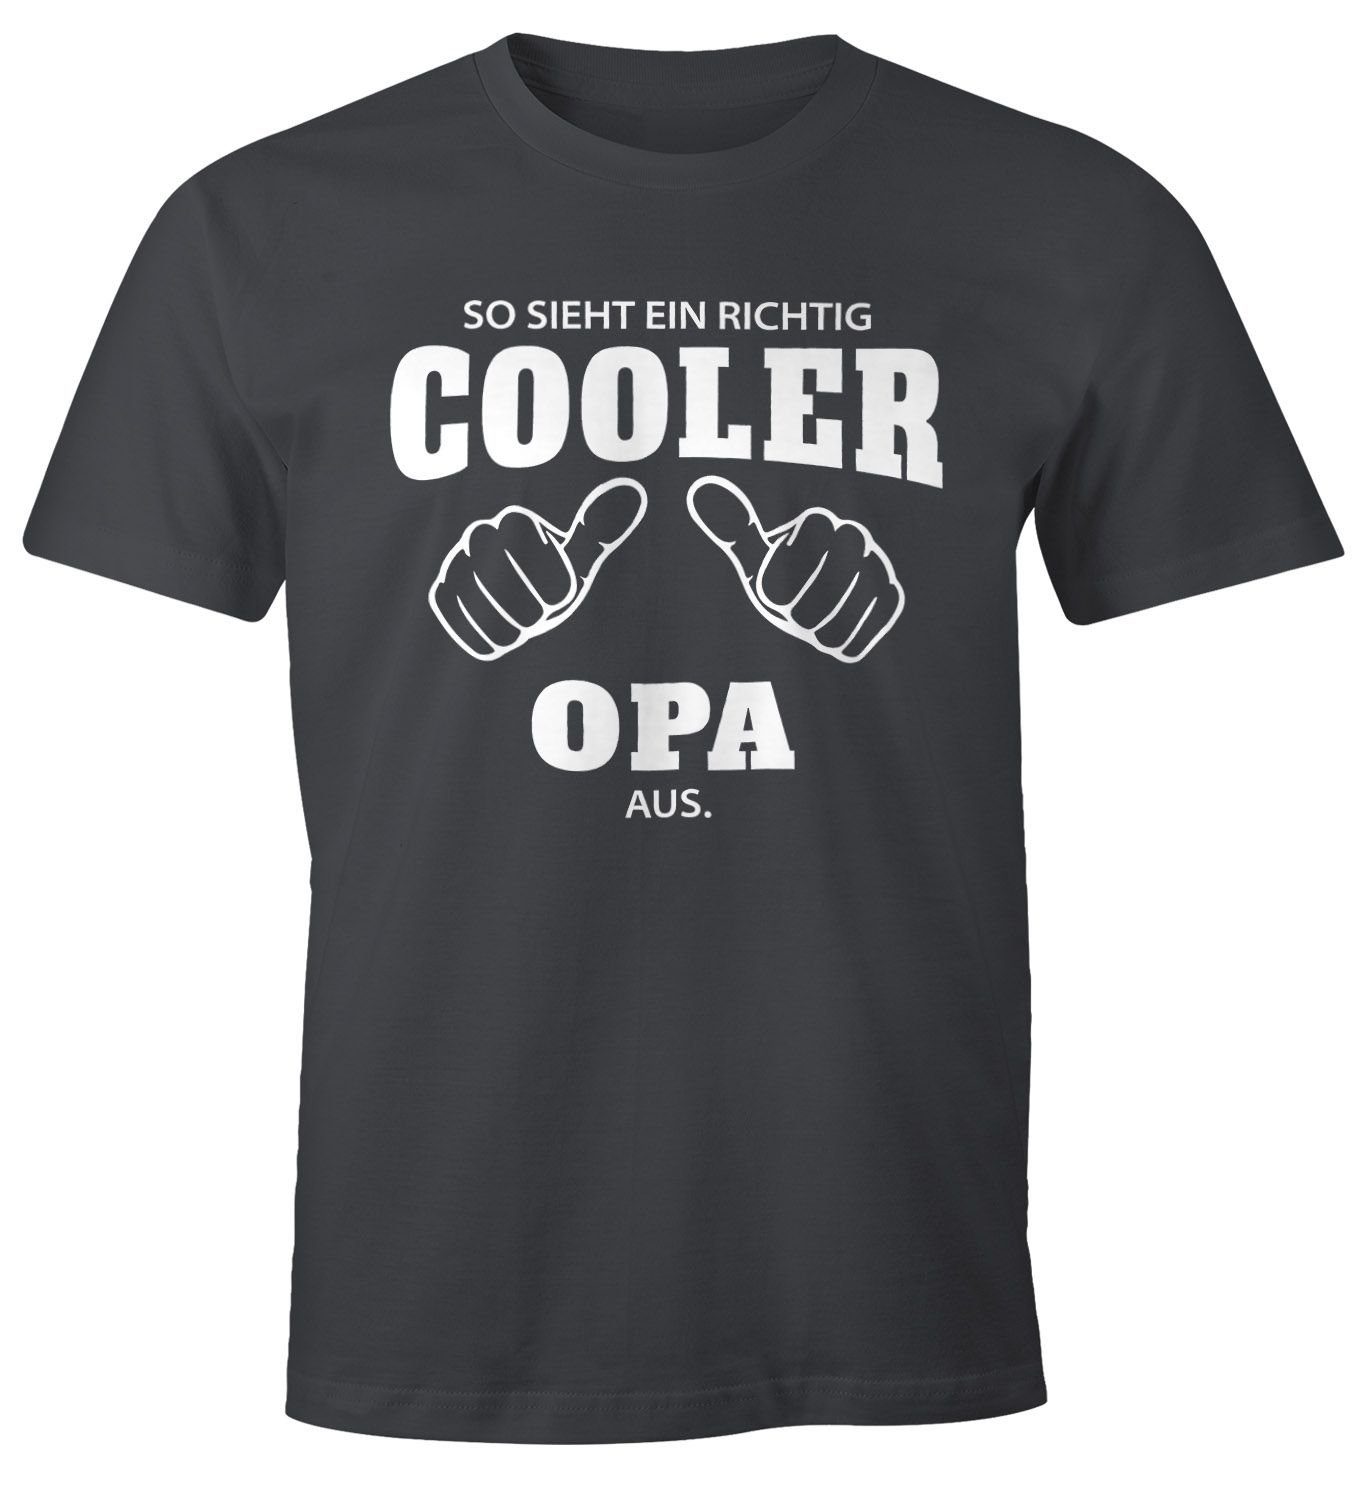 So Opa [object richtig mit T-Shirt Print Moonworks® richtig cooler aus ein sieht ein MoonWorks Object] grau Herren Print-Shirt Fun-Shirt